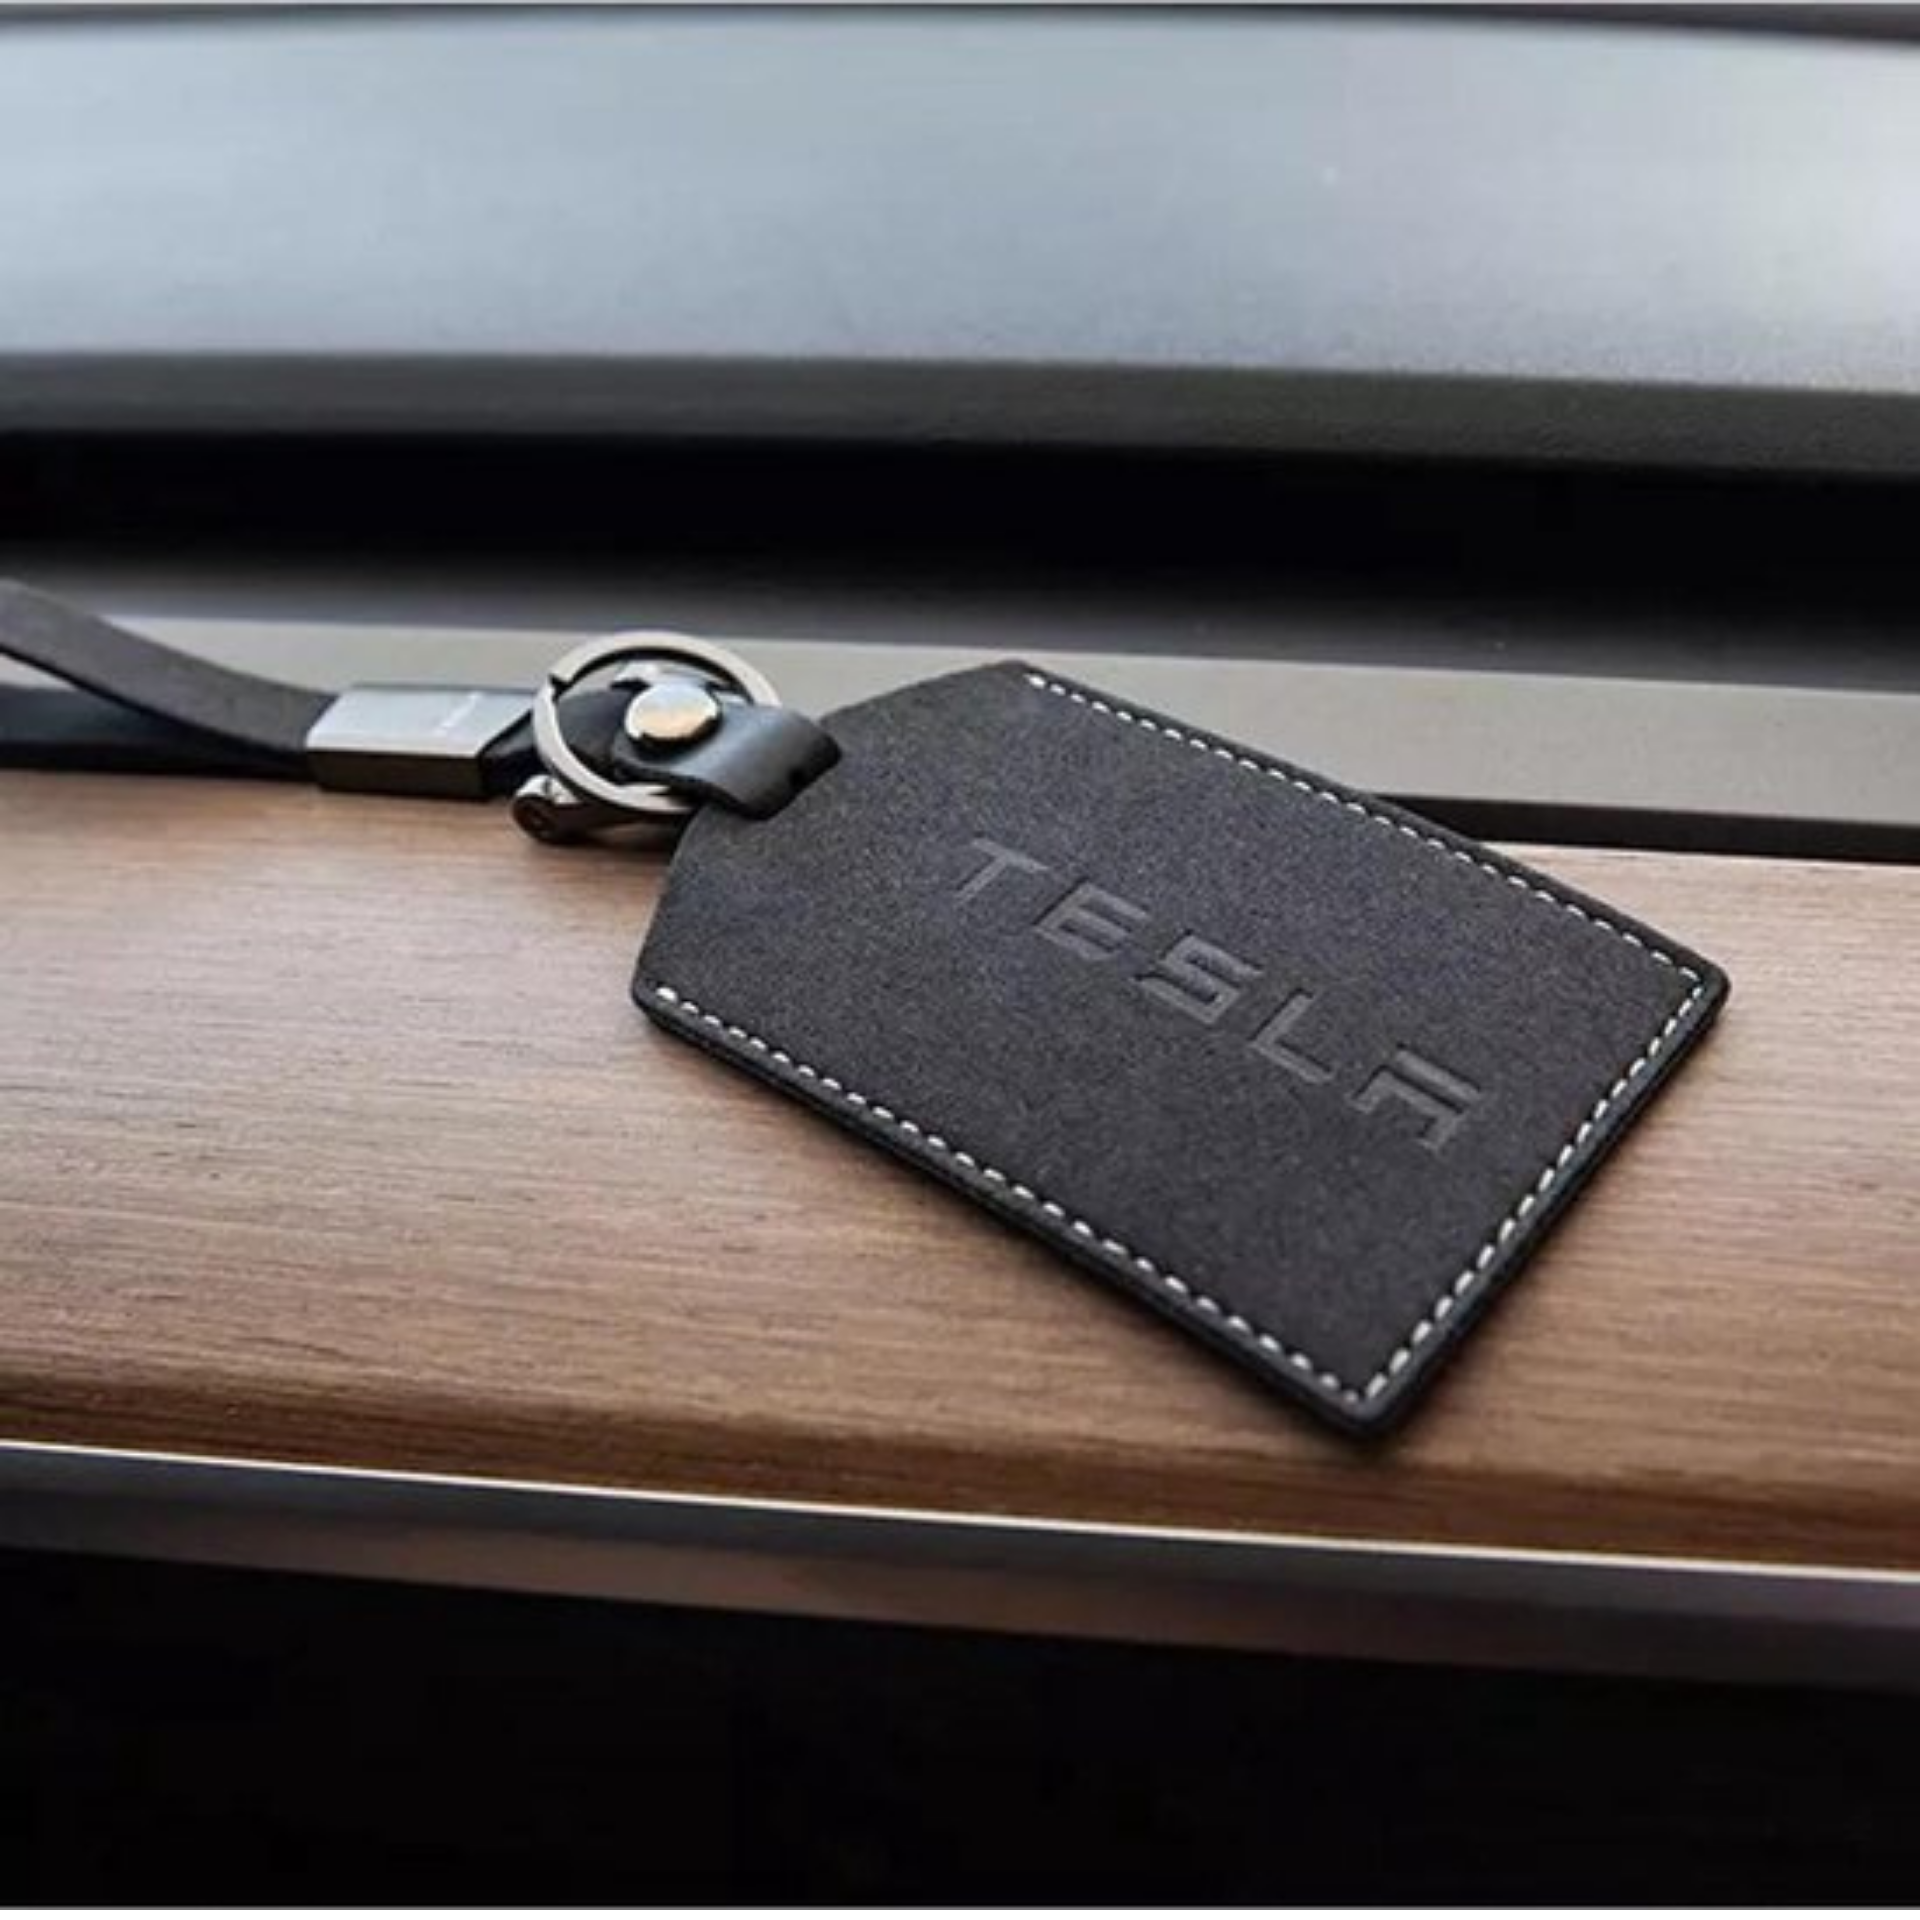 Schlüsselkartenhalter für Tesla Model 3/Y